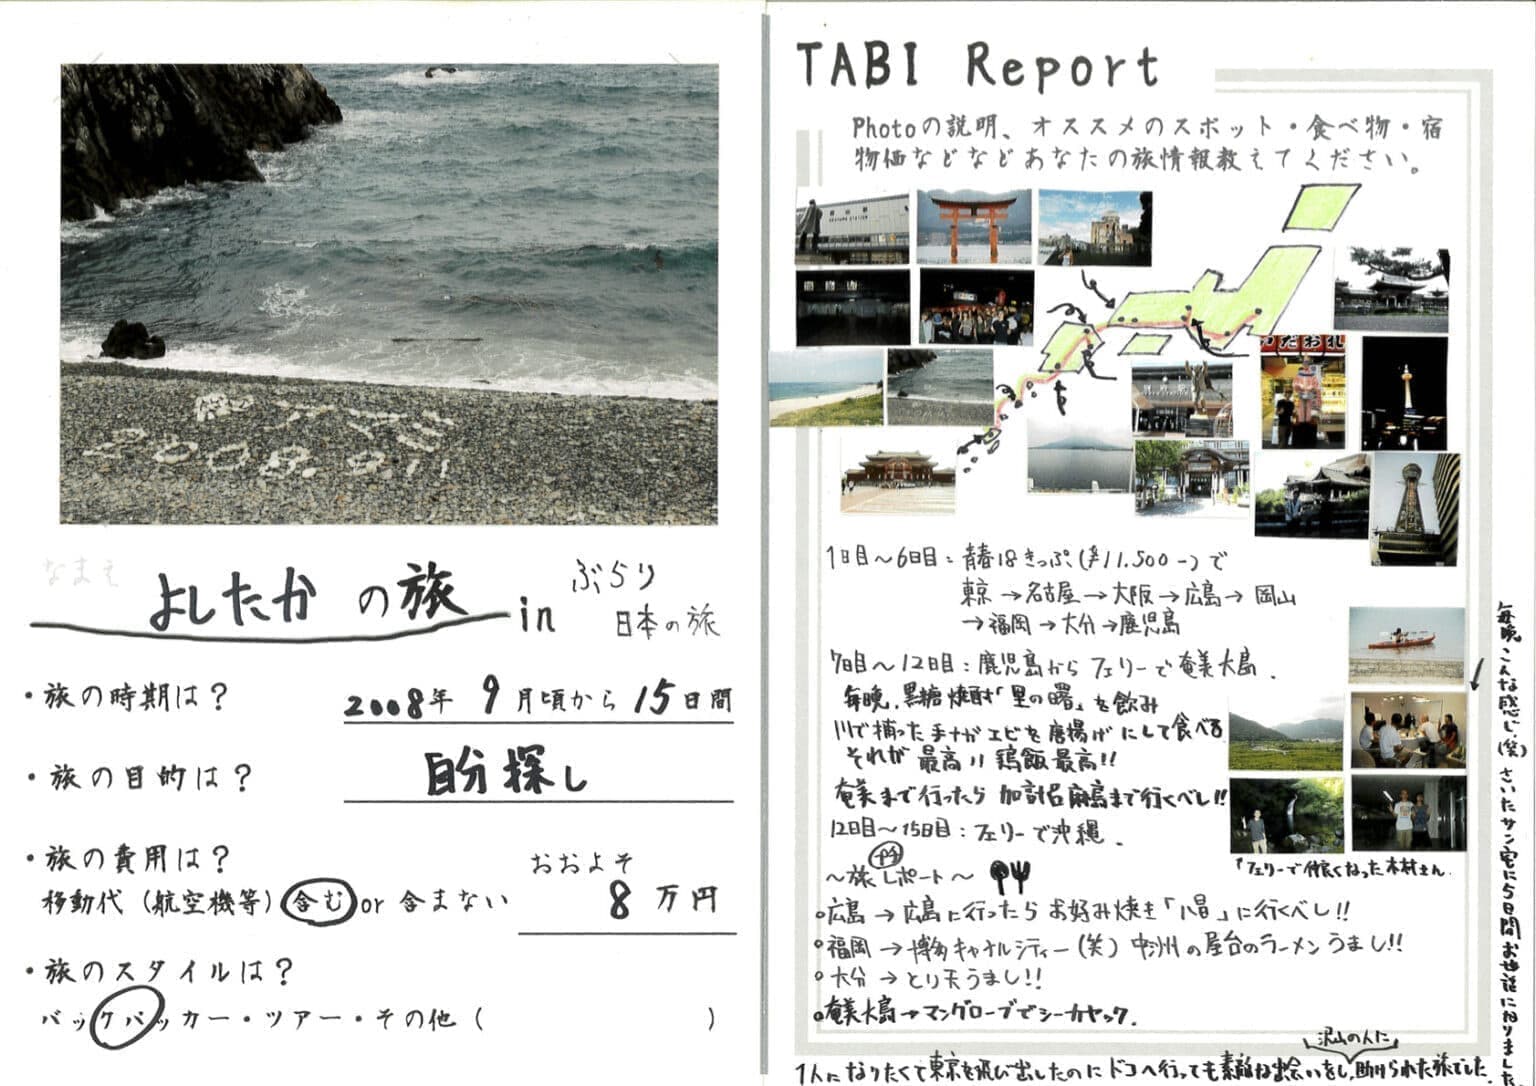 世界一周旅ダイニング居酒屋旅ノートよしたかぶらり日本旅